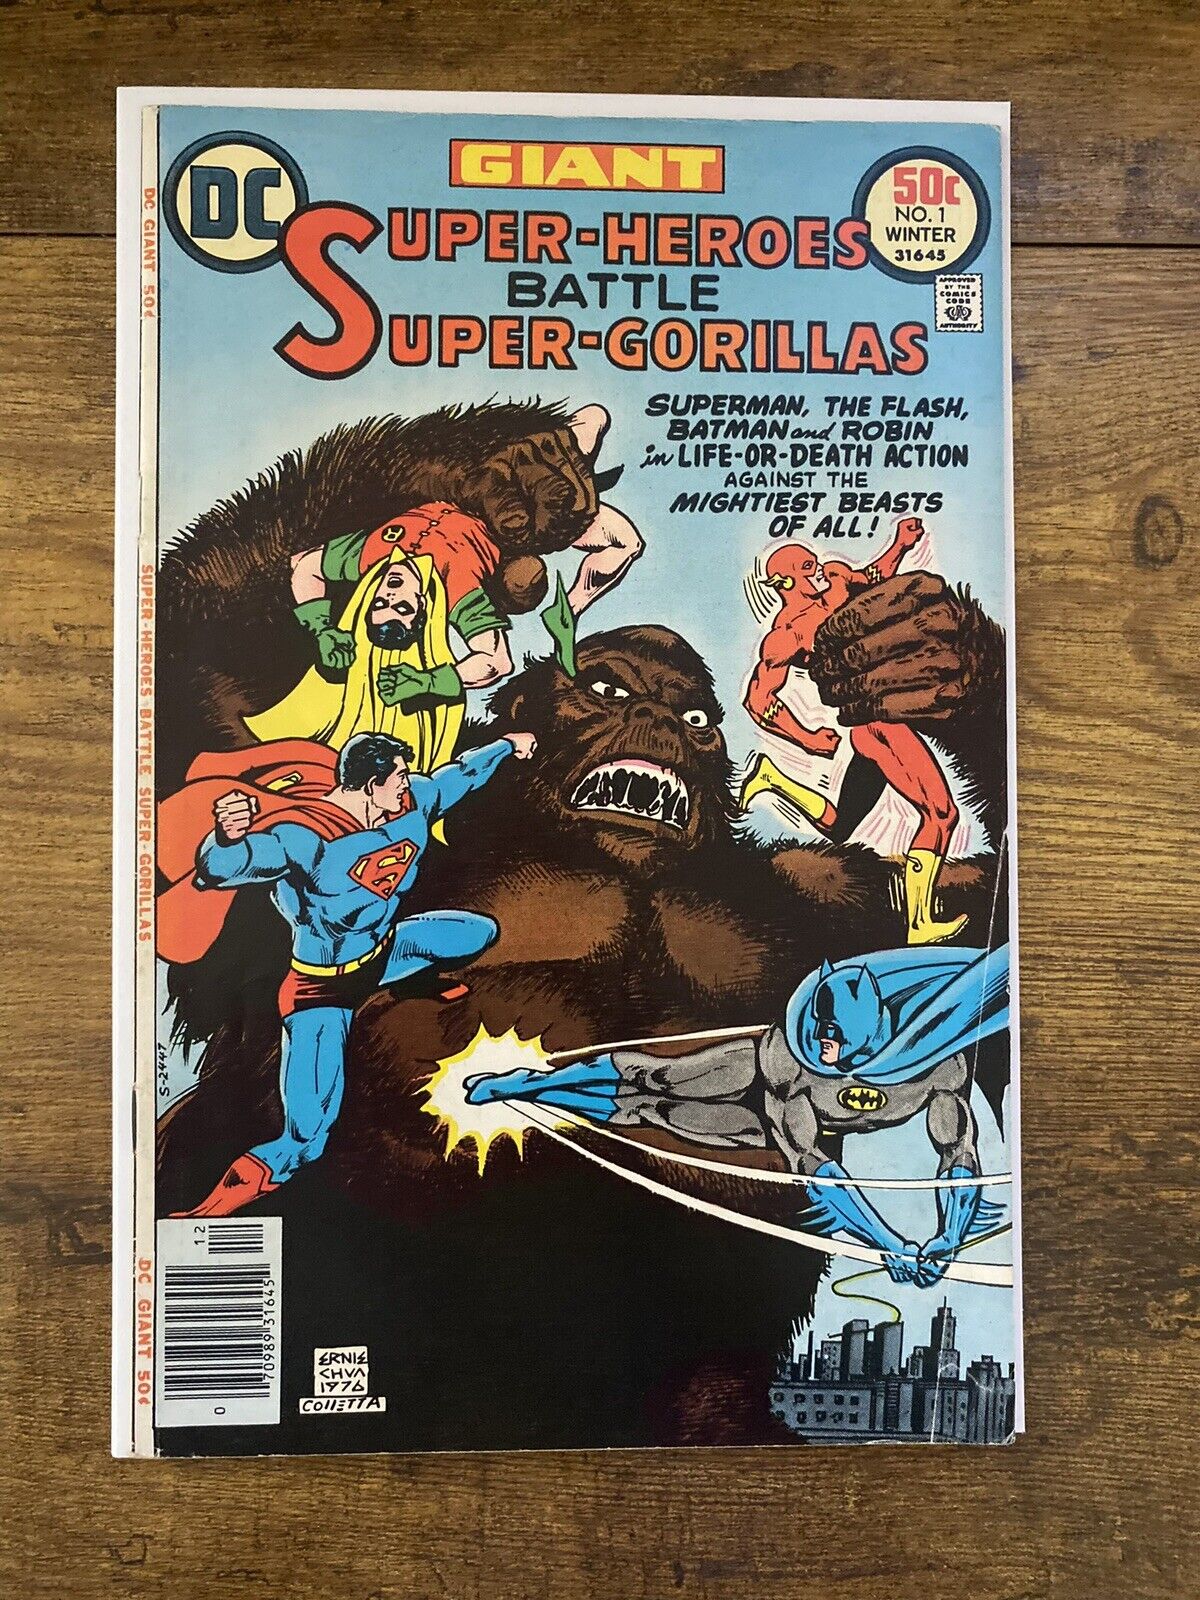 🔥Super-Heroes Battle Super-Gorillas #1 DC Comics 1976 Flash Batman Superman 🔥